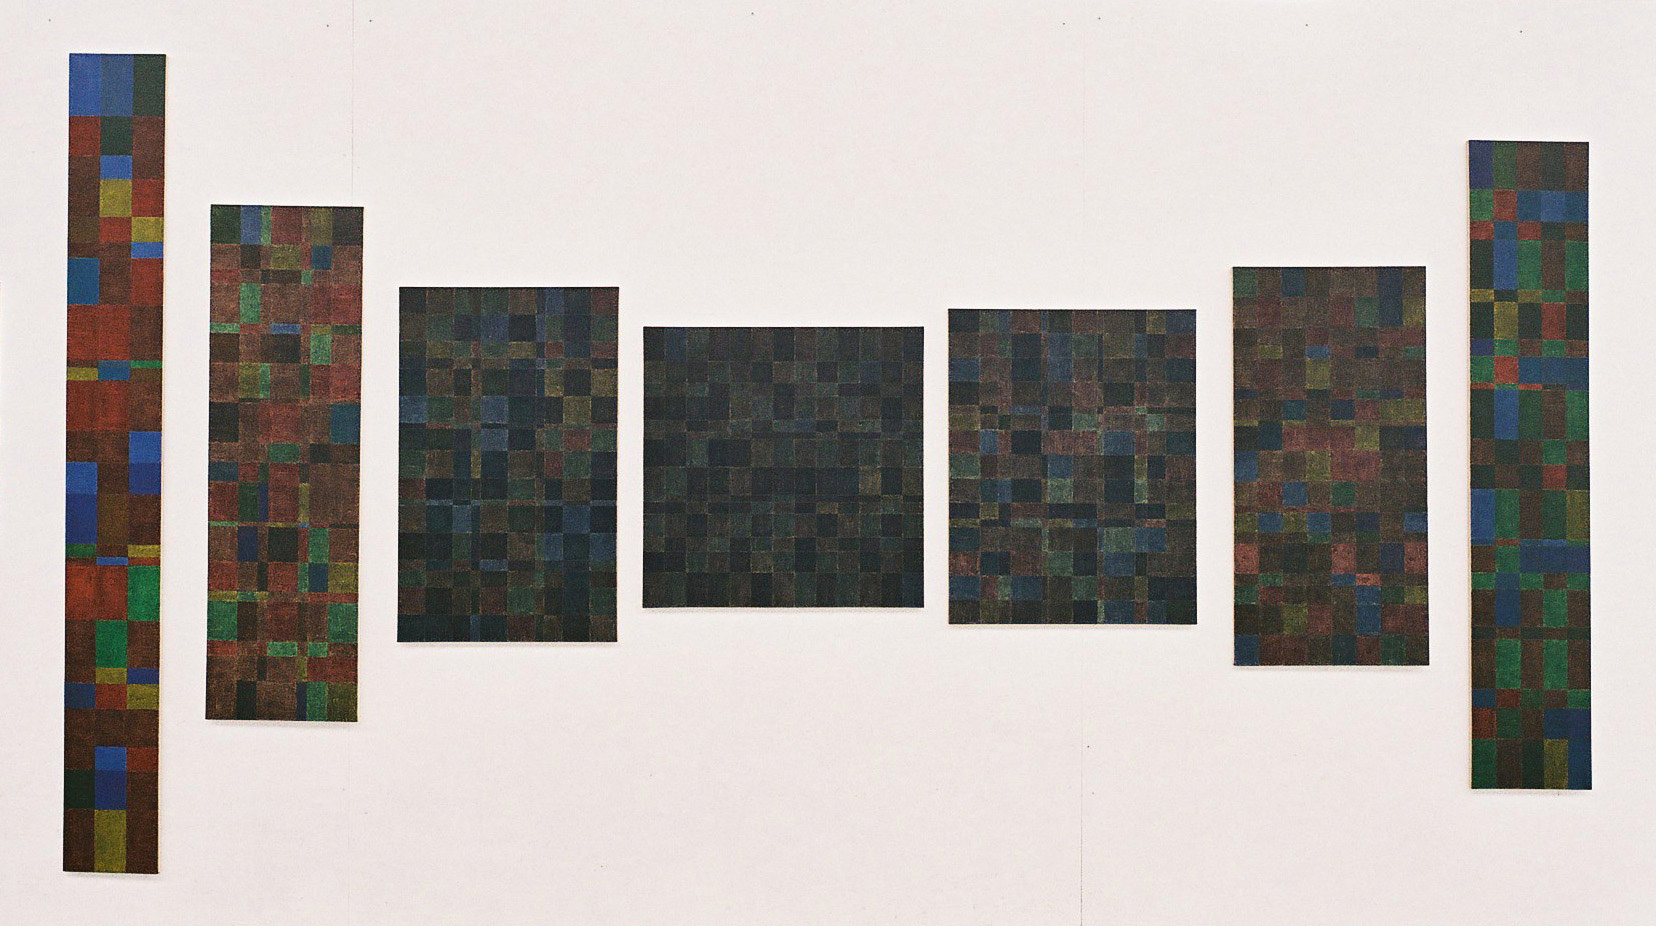 Une représentation artistique du Big Bang, 7 tableaux se développent à partir d'un carré en passant par des rectangles d'or. Le carré est peint avec 4 noirs "colorés", rouge, jaune, vert et bleu, puis les couleurs sont de plus en plus présentes d'un tableau à l'autre, symbolisant l'apparition de la vie.